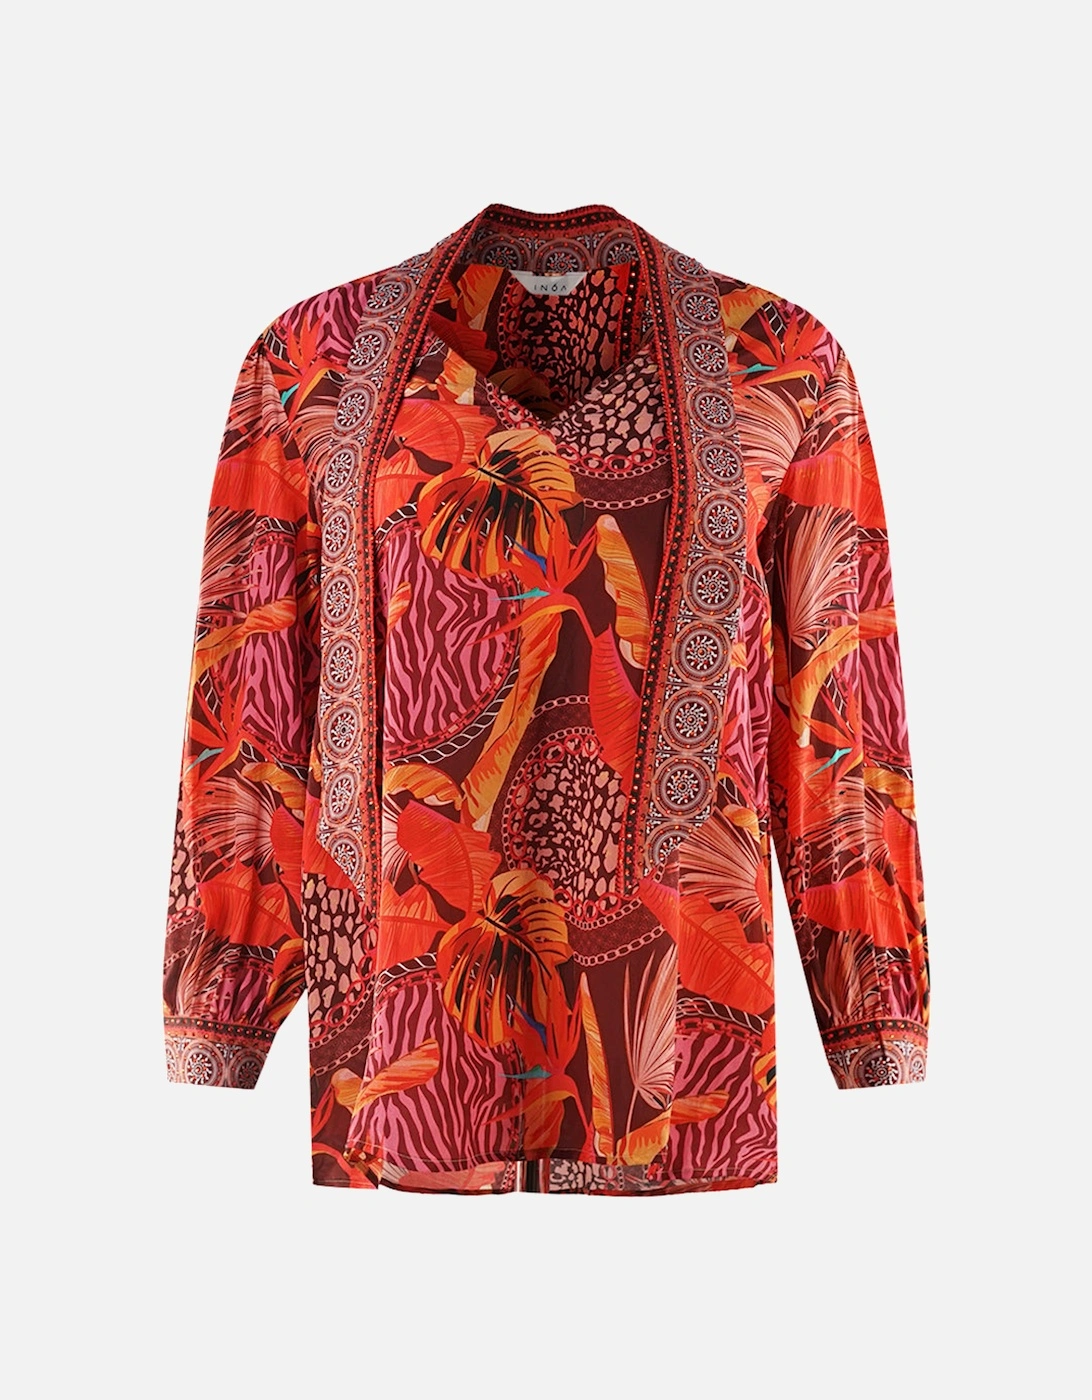 Congo Rainforest 1202115 Red Long Sleeve Blouse Silk Shirt, 3 of 2